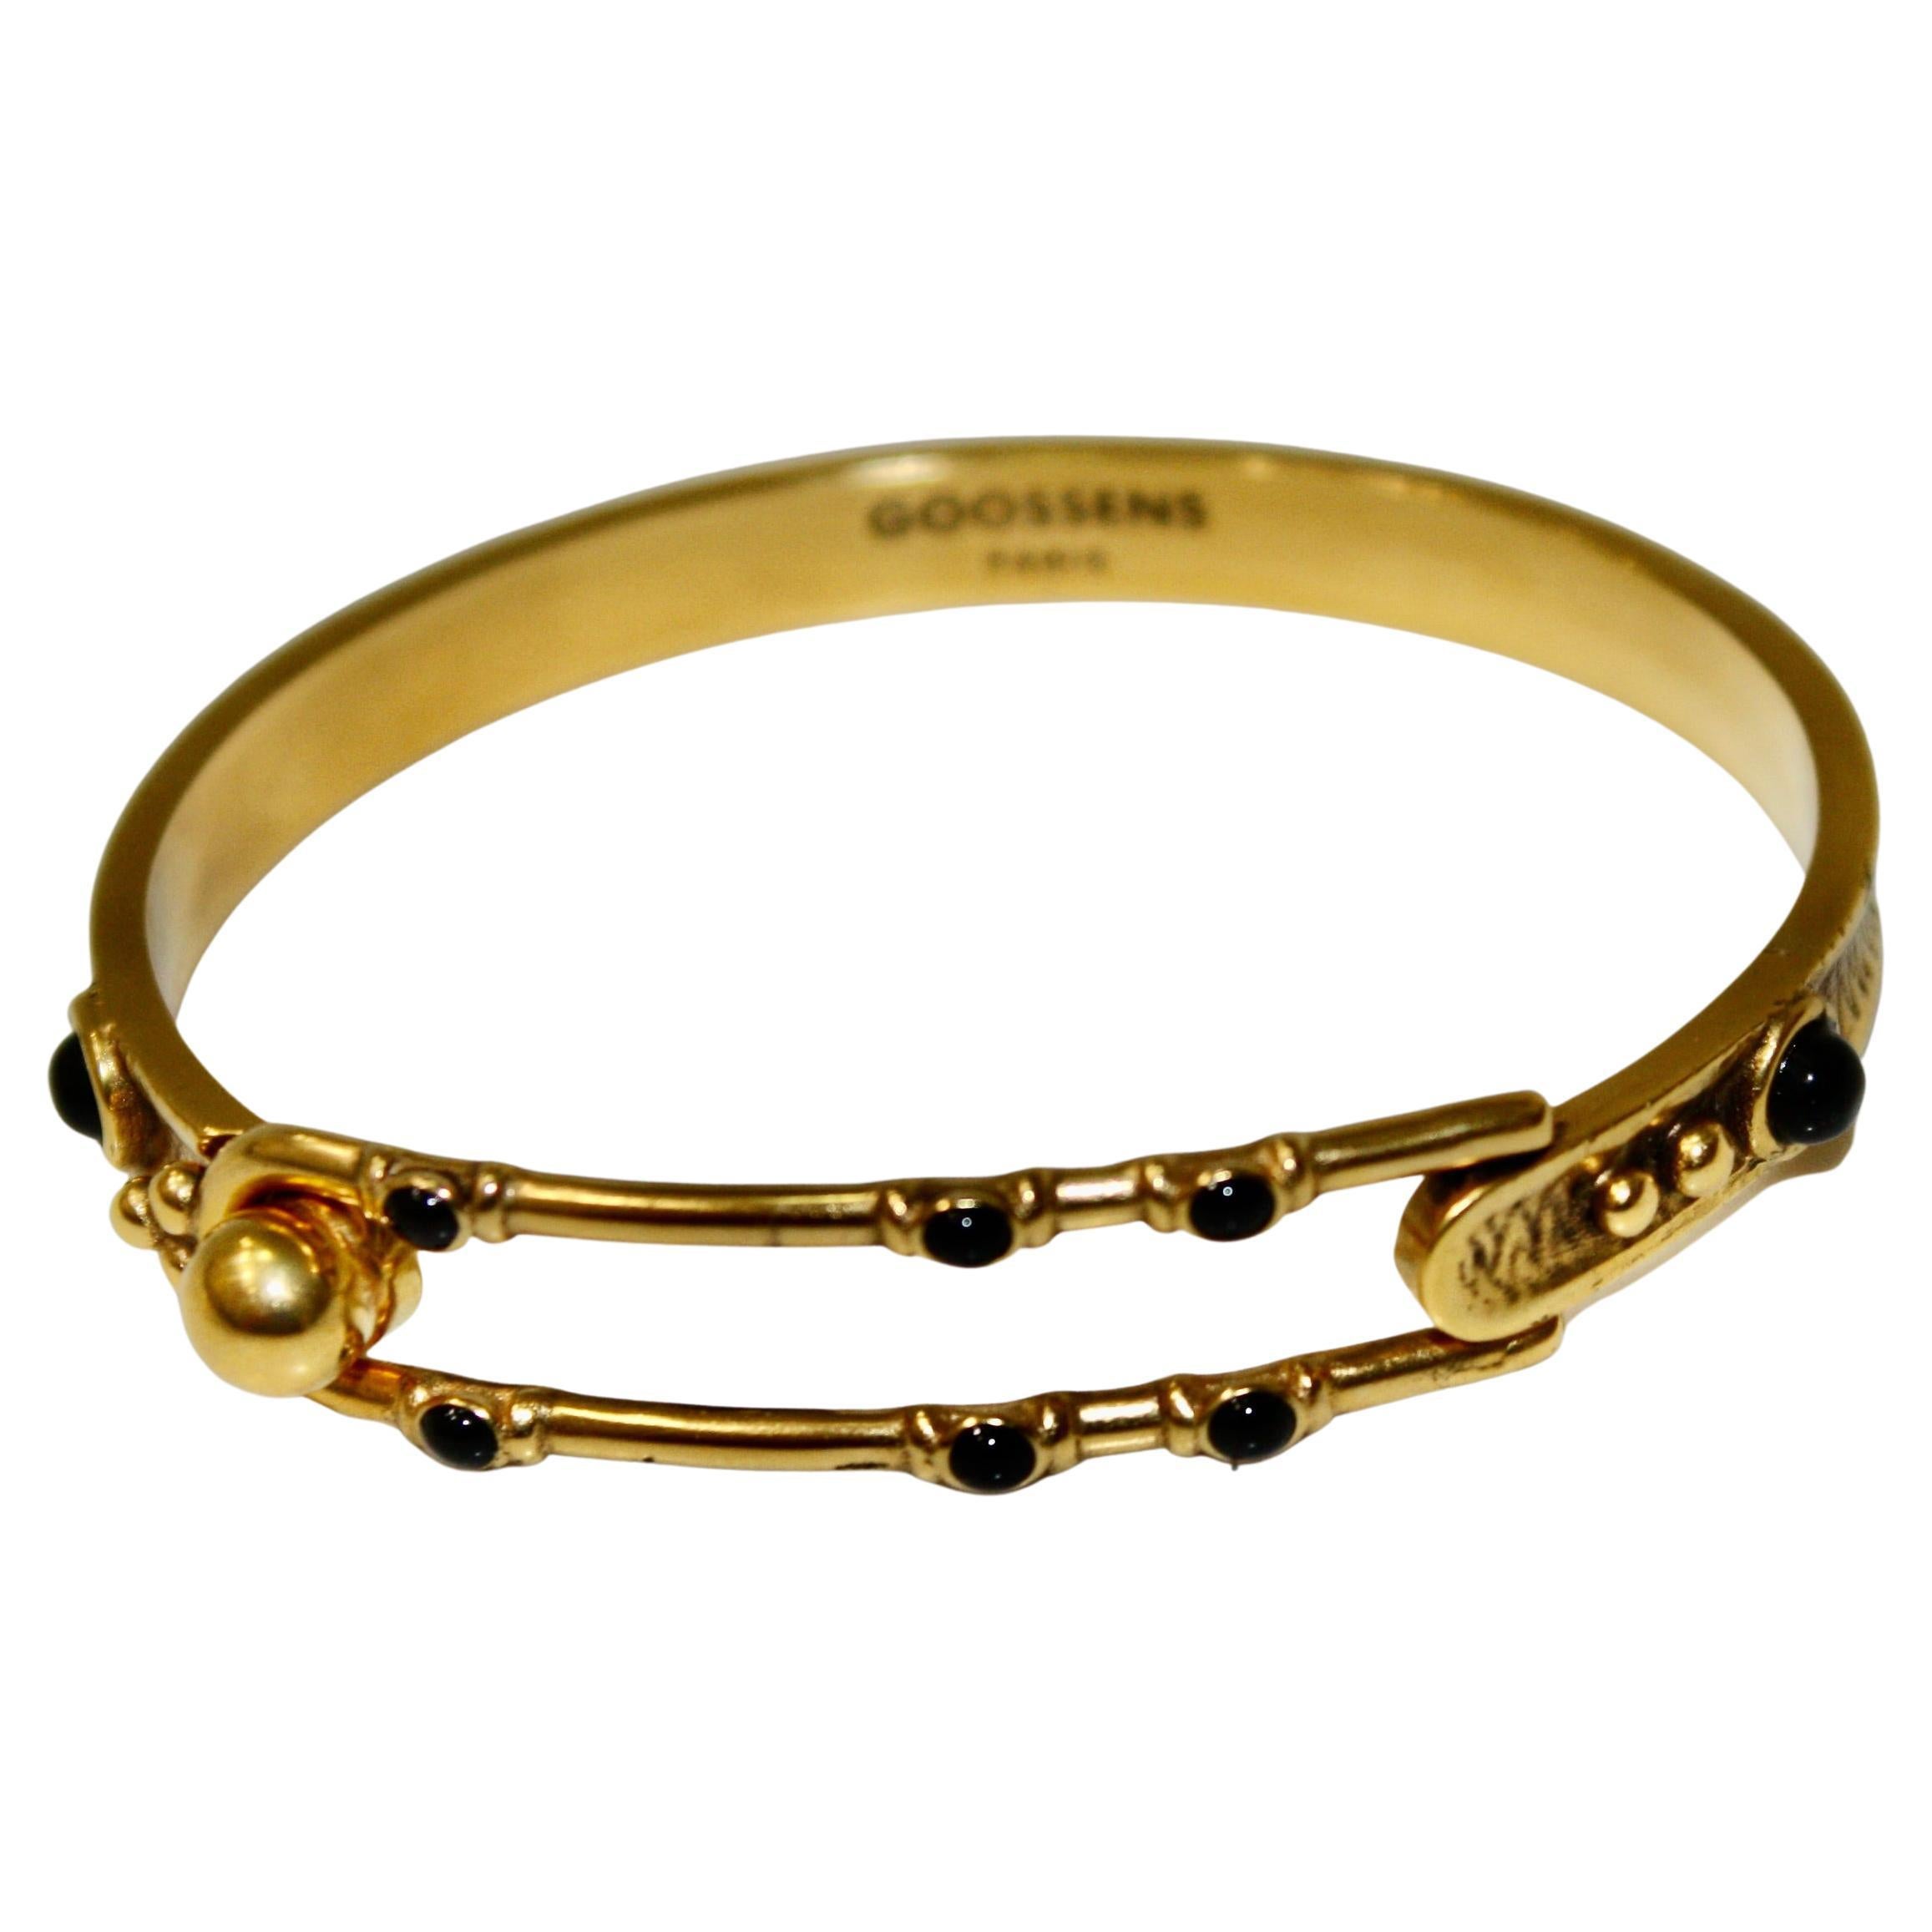 Goossens Paris Boucle bracelet